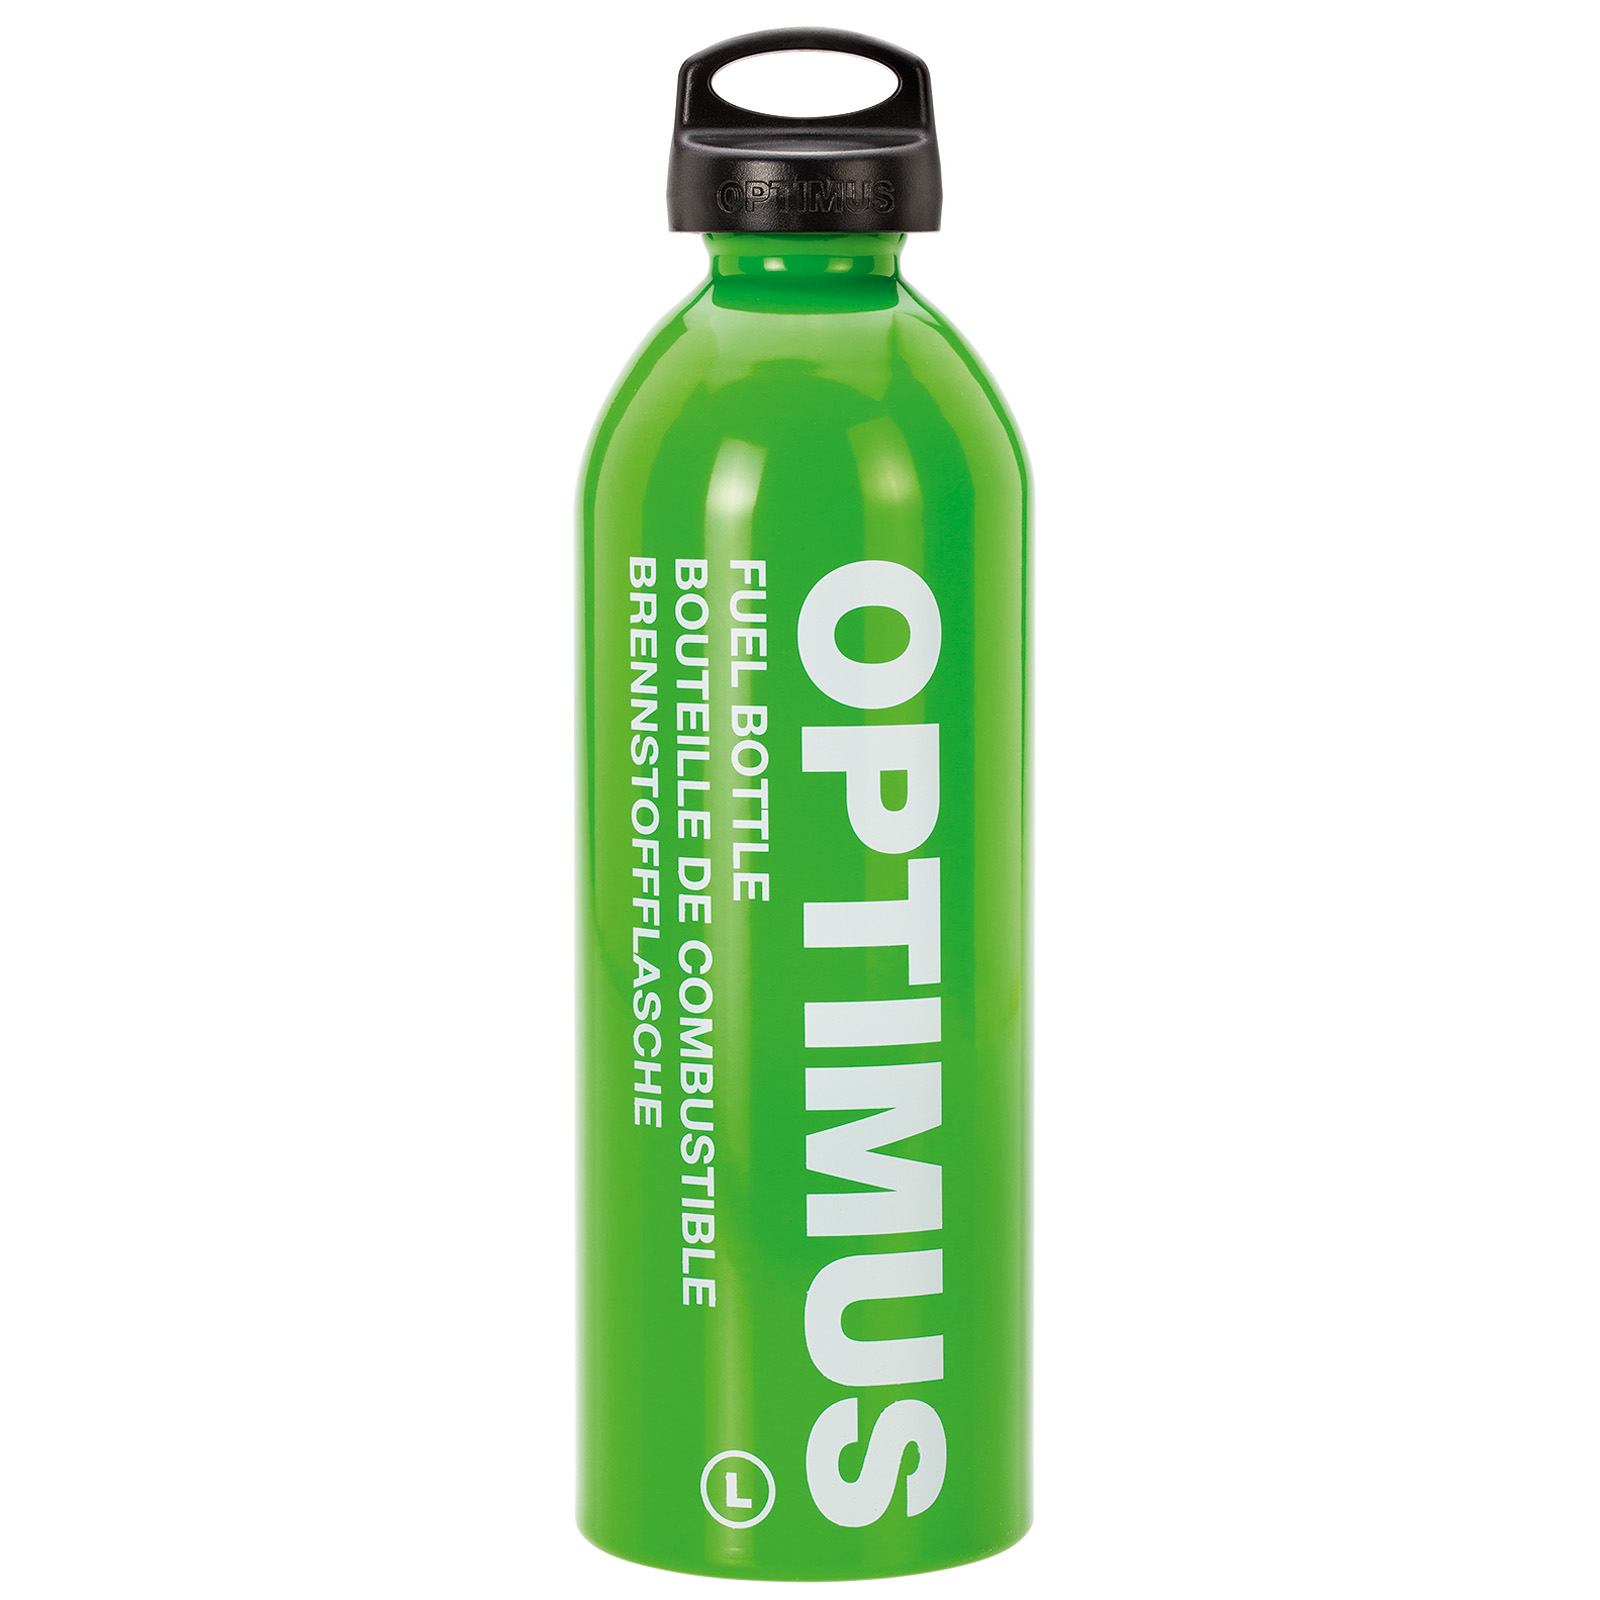 Produktbild von Optimus Brennstoffflasche L 1.0 L - grün